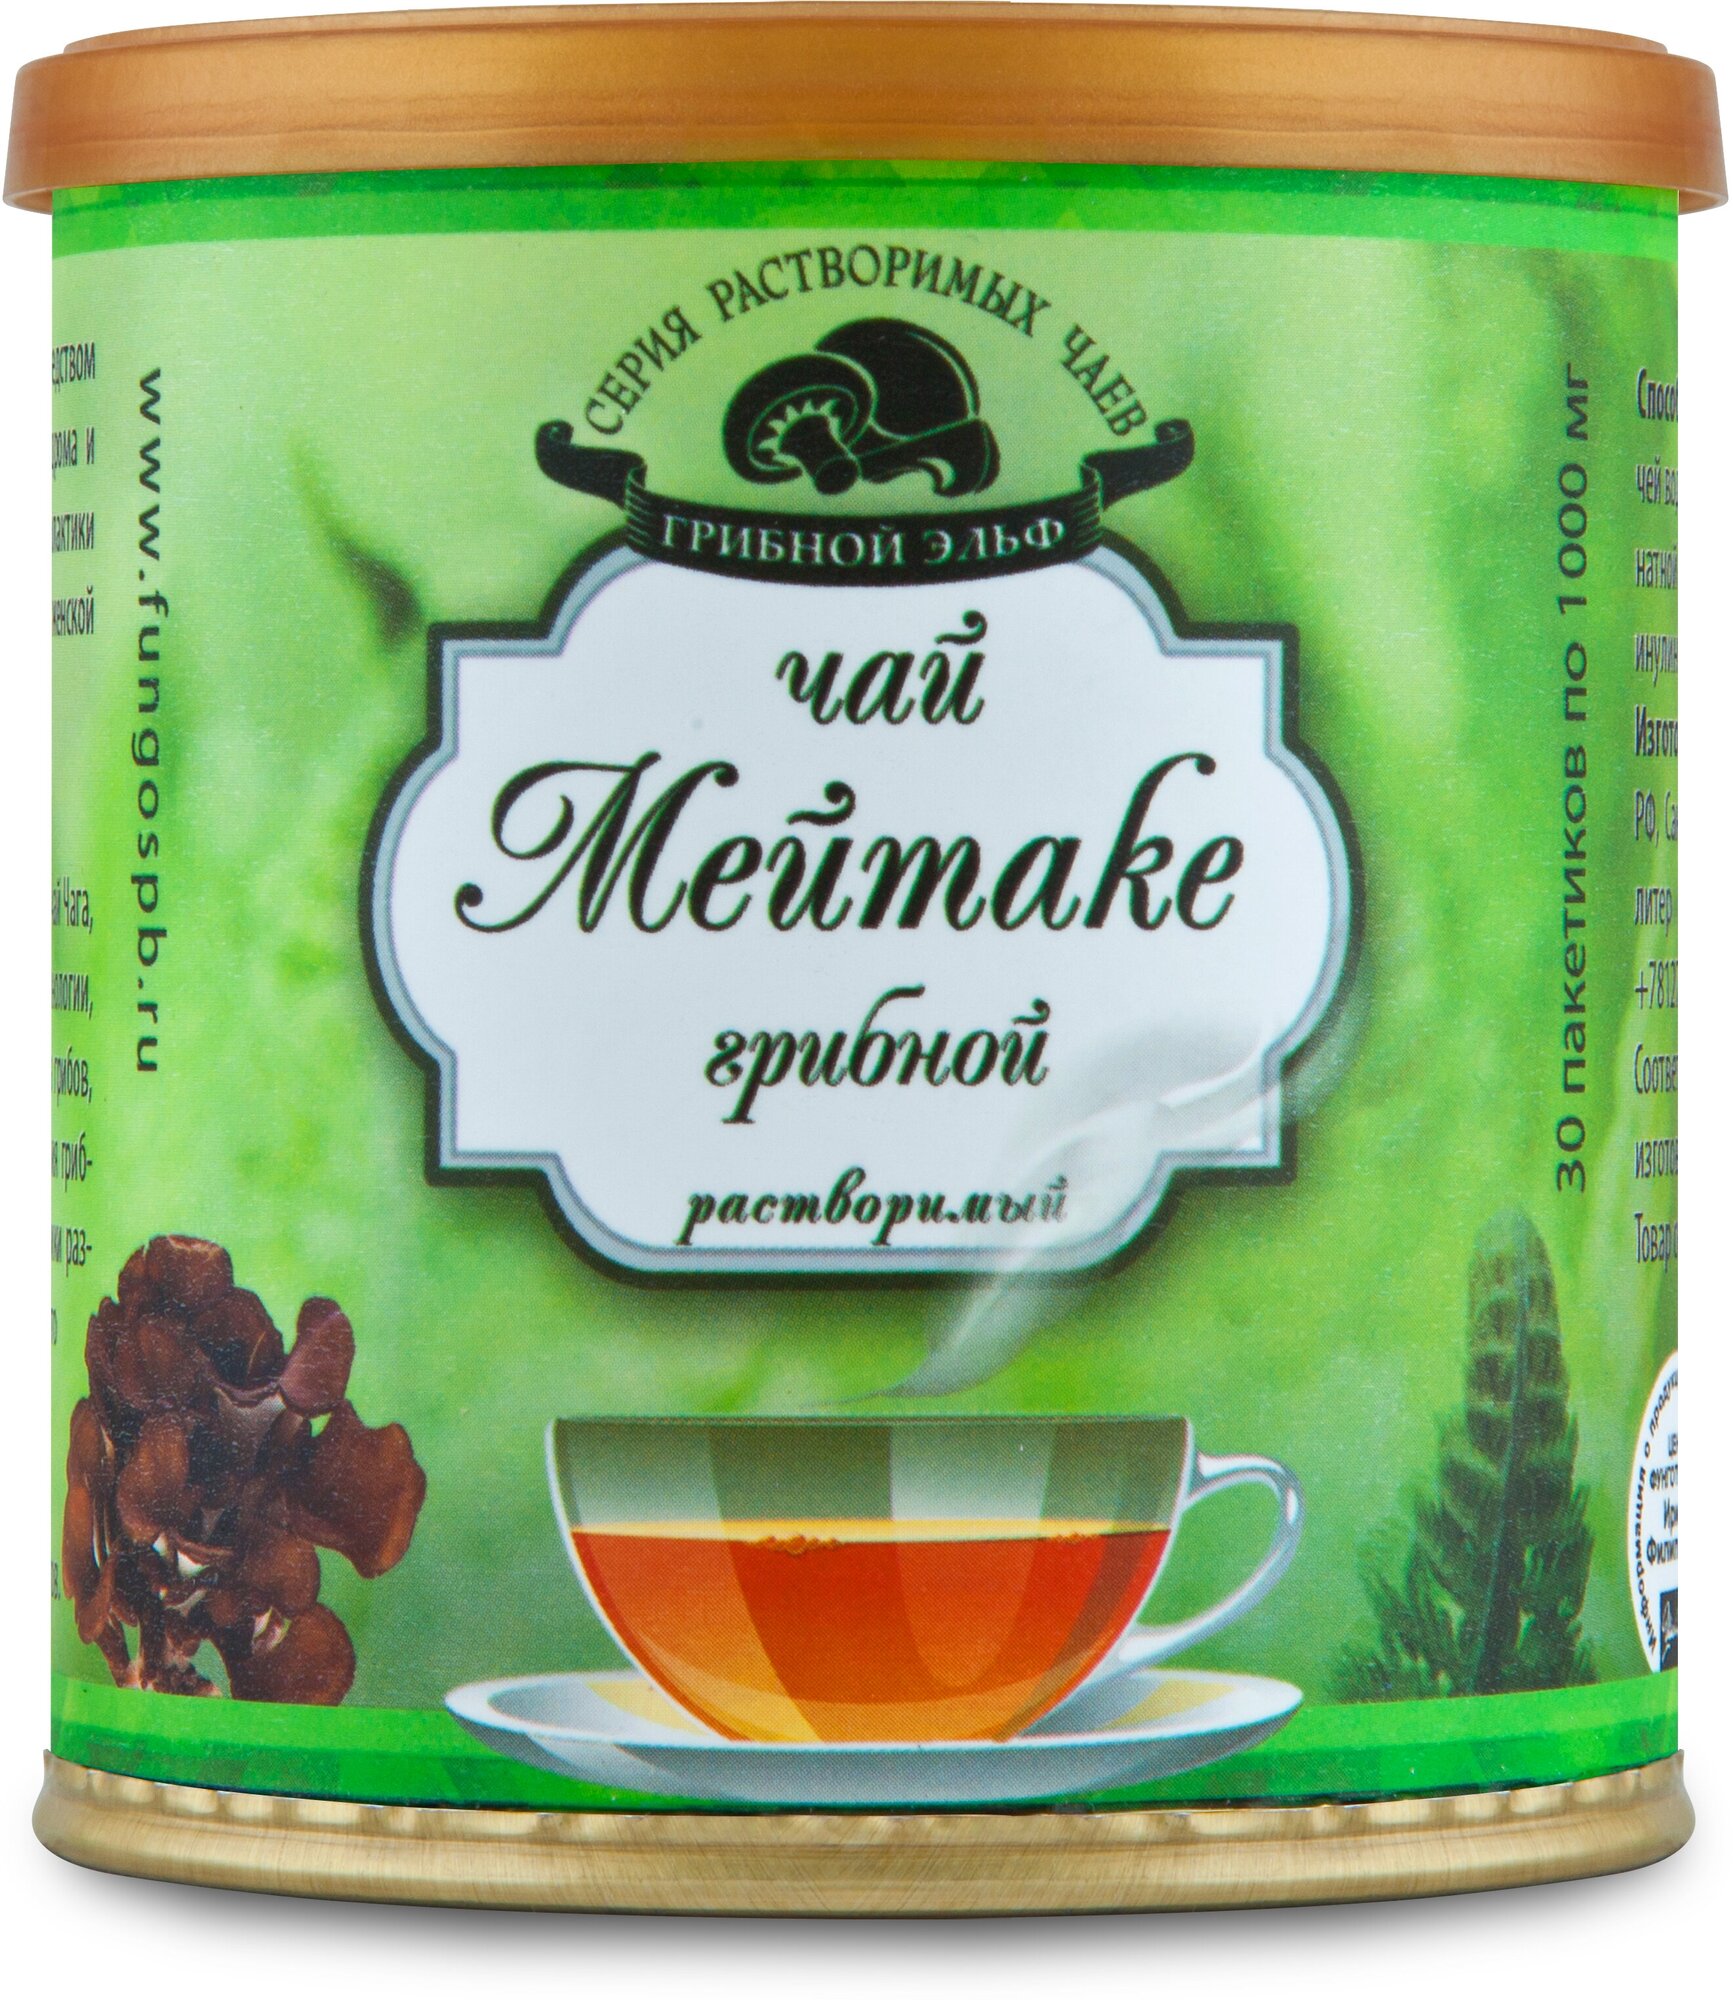 Чайный напиток Мейтаке растворимый на основе экстракта дикорастущего гриба торговой марки ФунгоШи